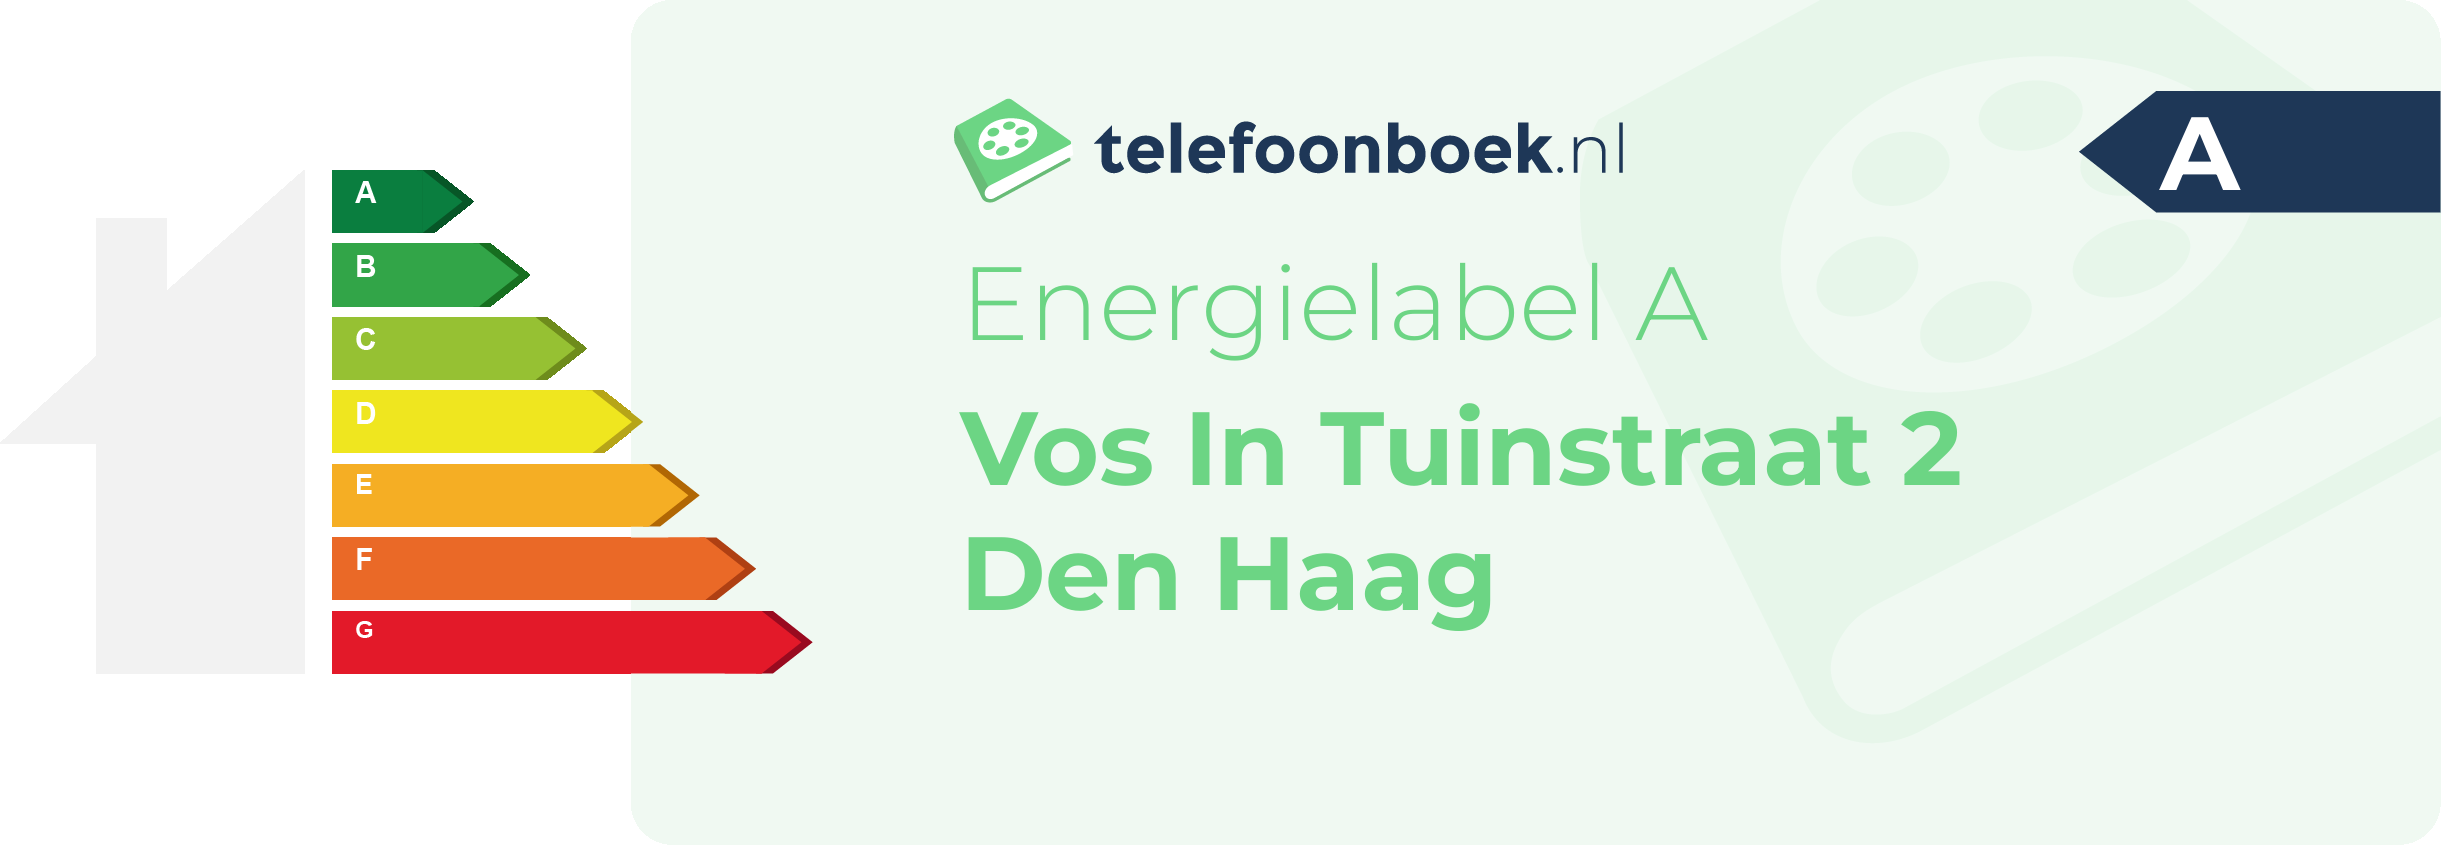 Energielabel Vos In Tuinstraat 2 Den Haag